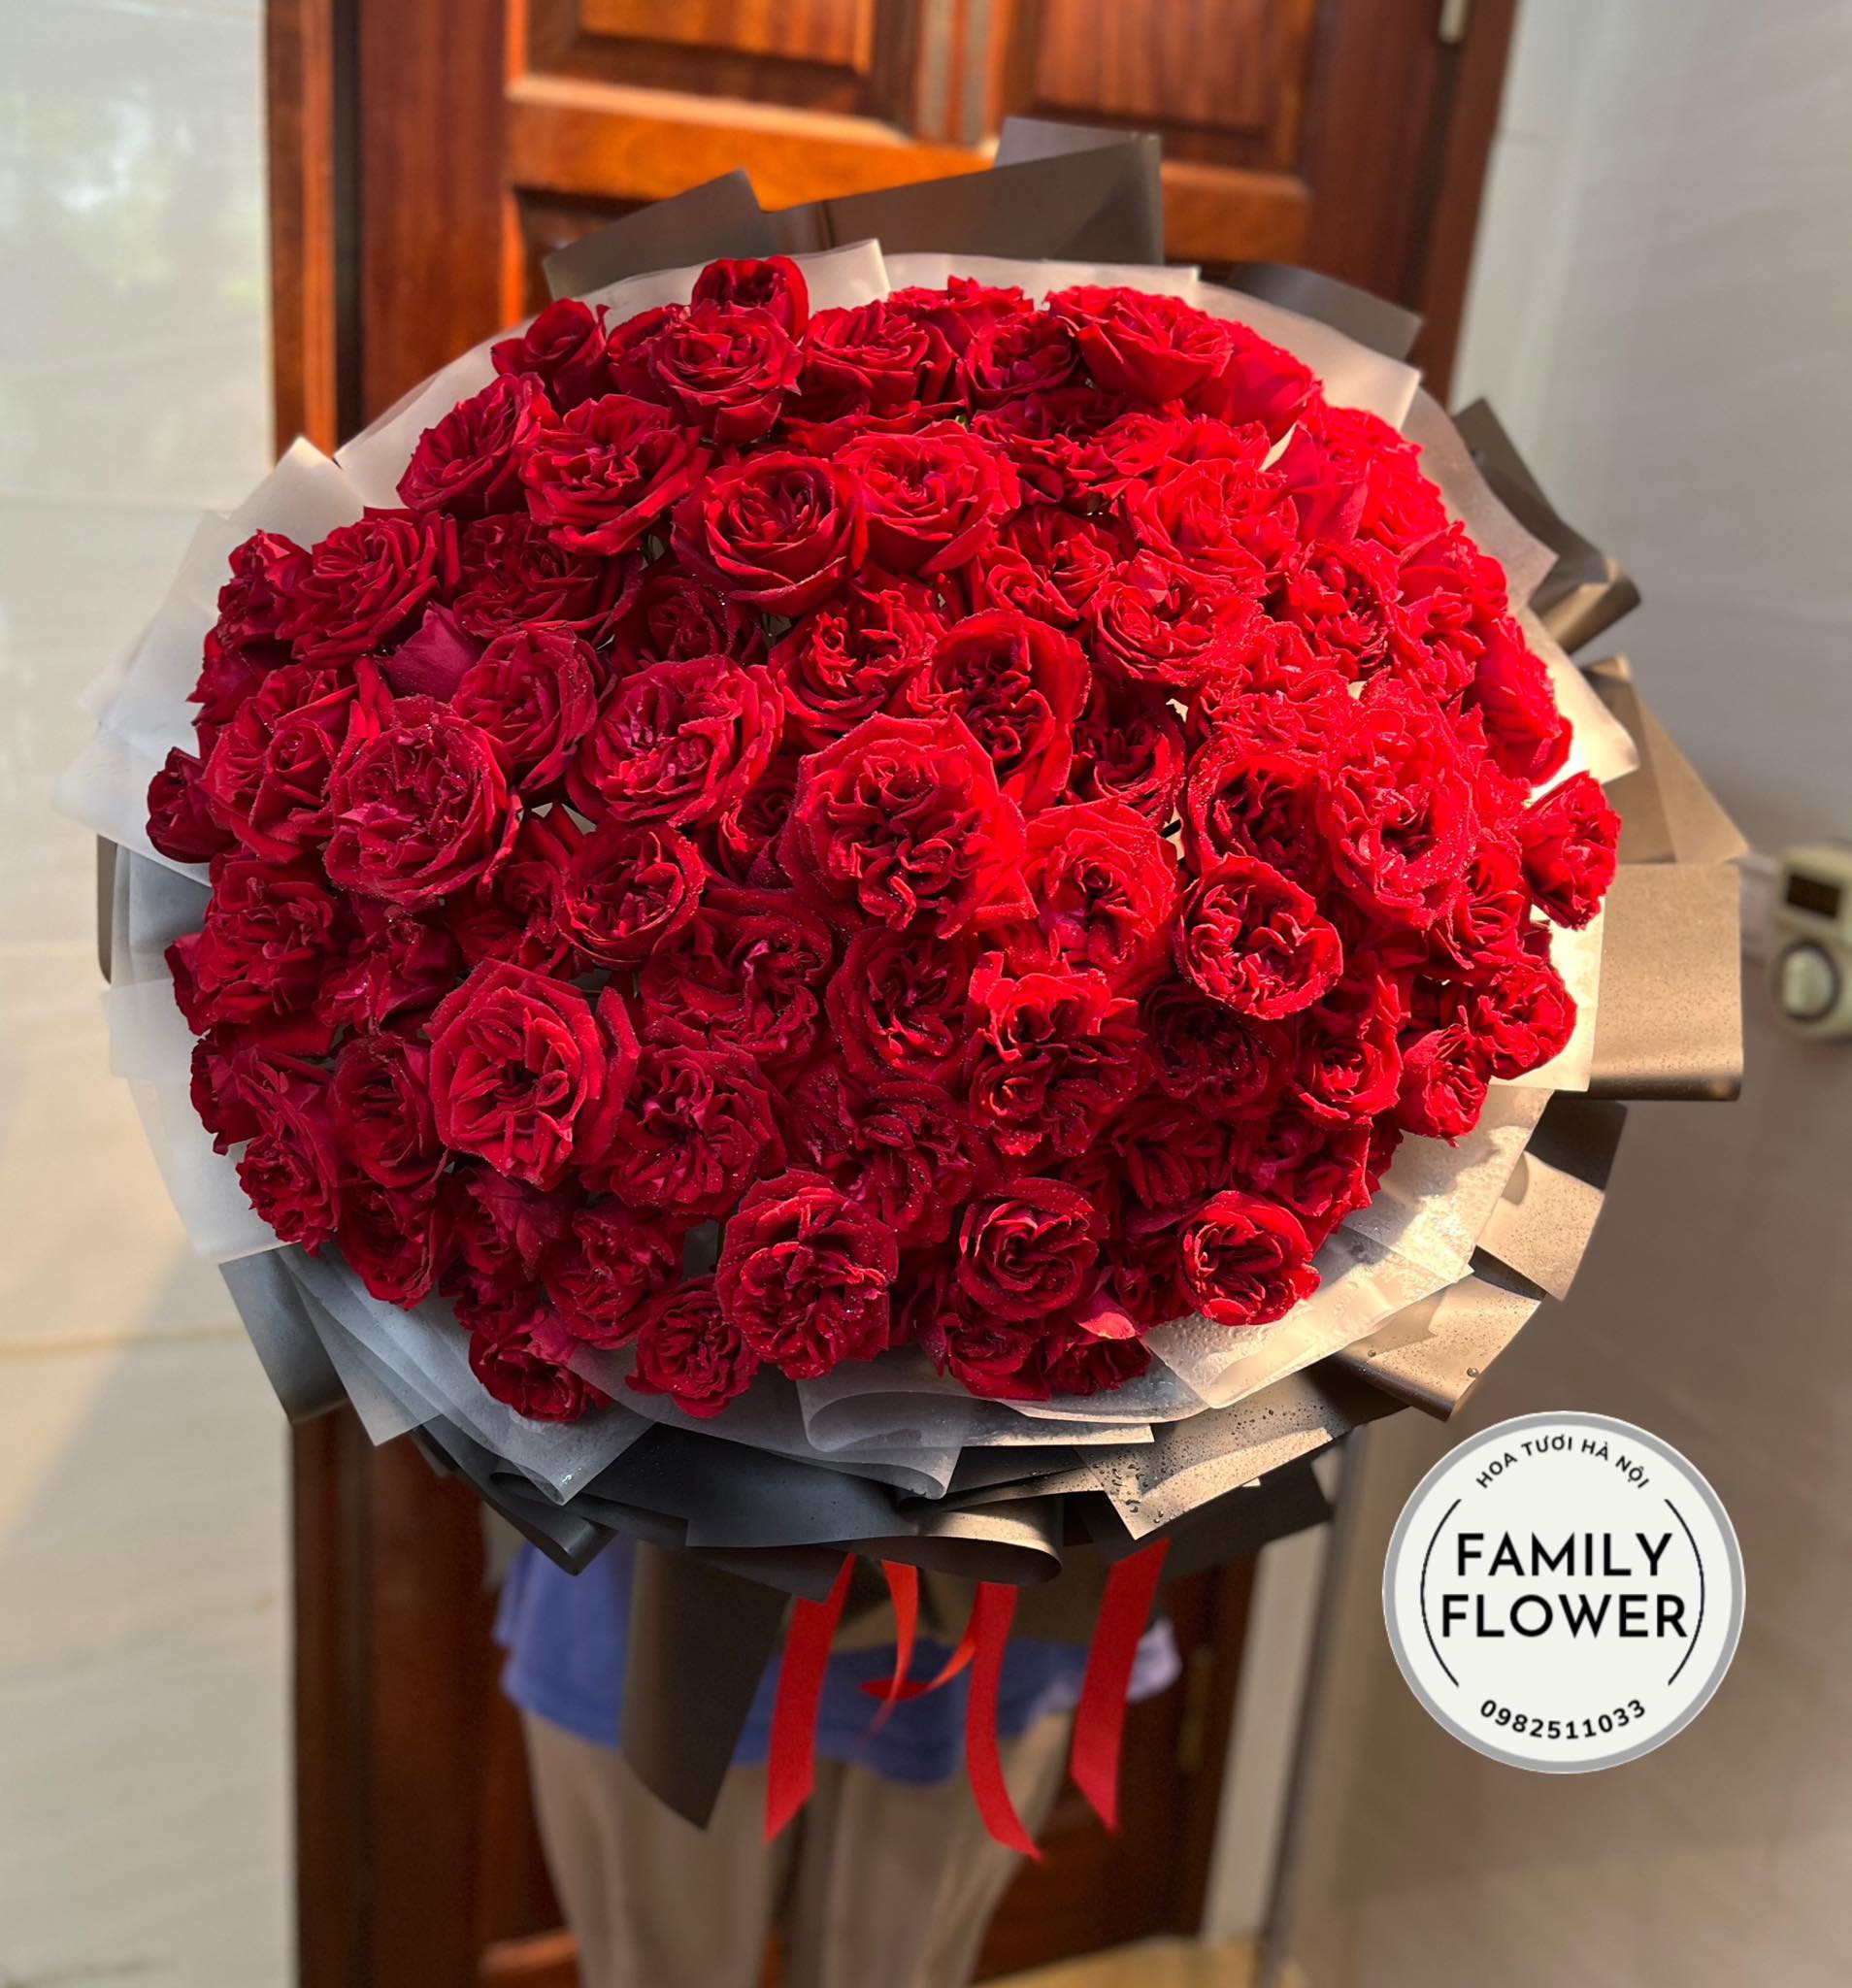 Bó hoa hồng oha'ra tặng người yêu ở Hà Nội! Bó hoa khổng lồng, hoa tươi Hà Nội